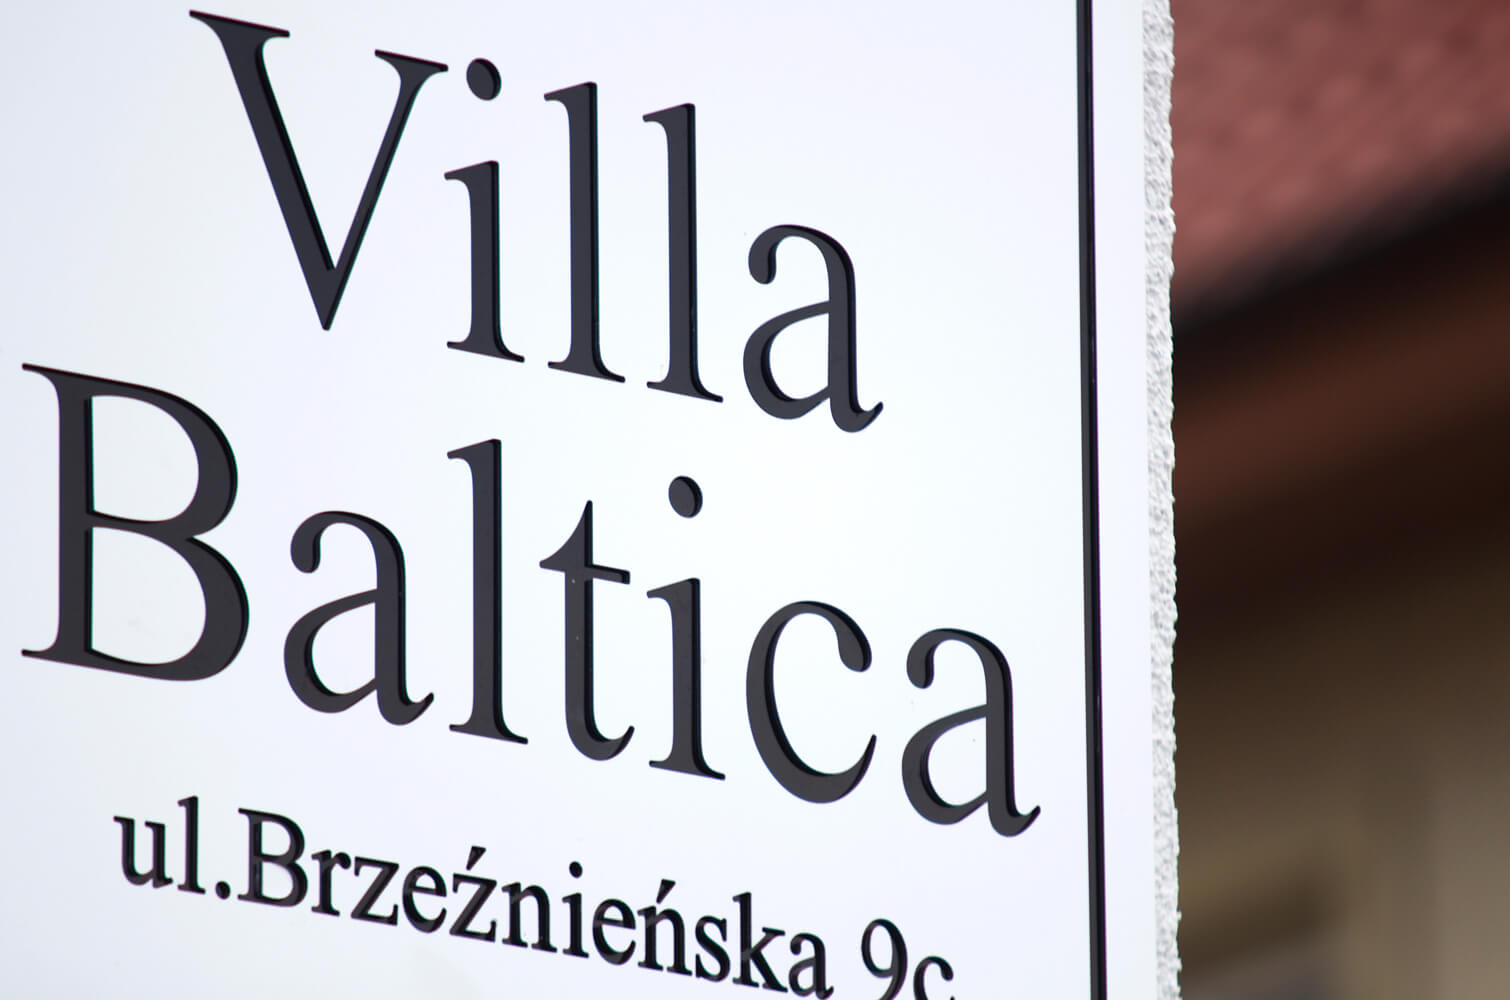 Villa Baltica - Villa Baltica - Firmenschild auf einer Dibond-Kassette in Mattweiß